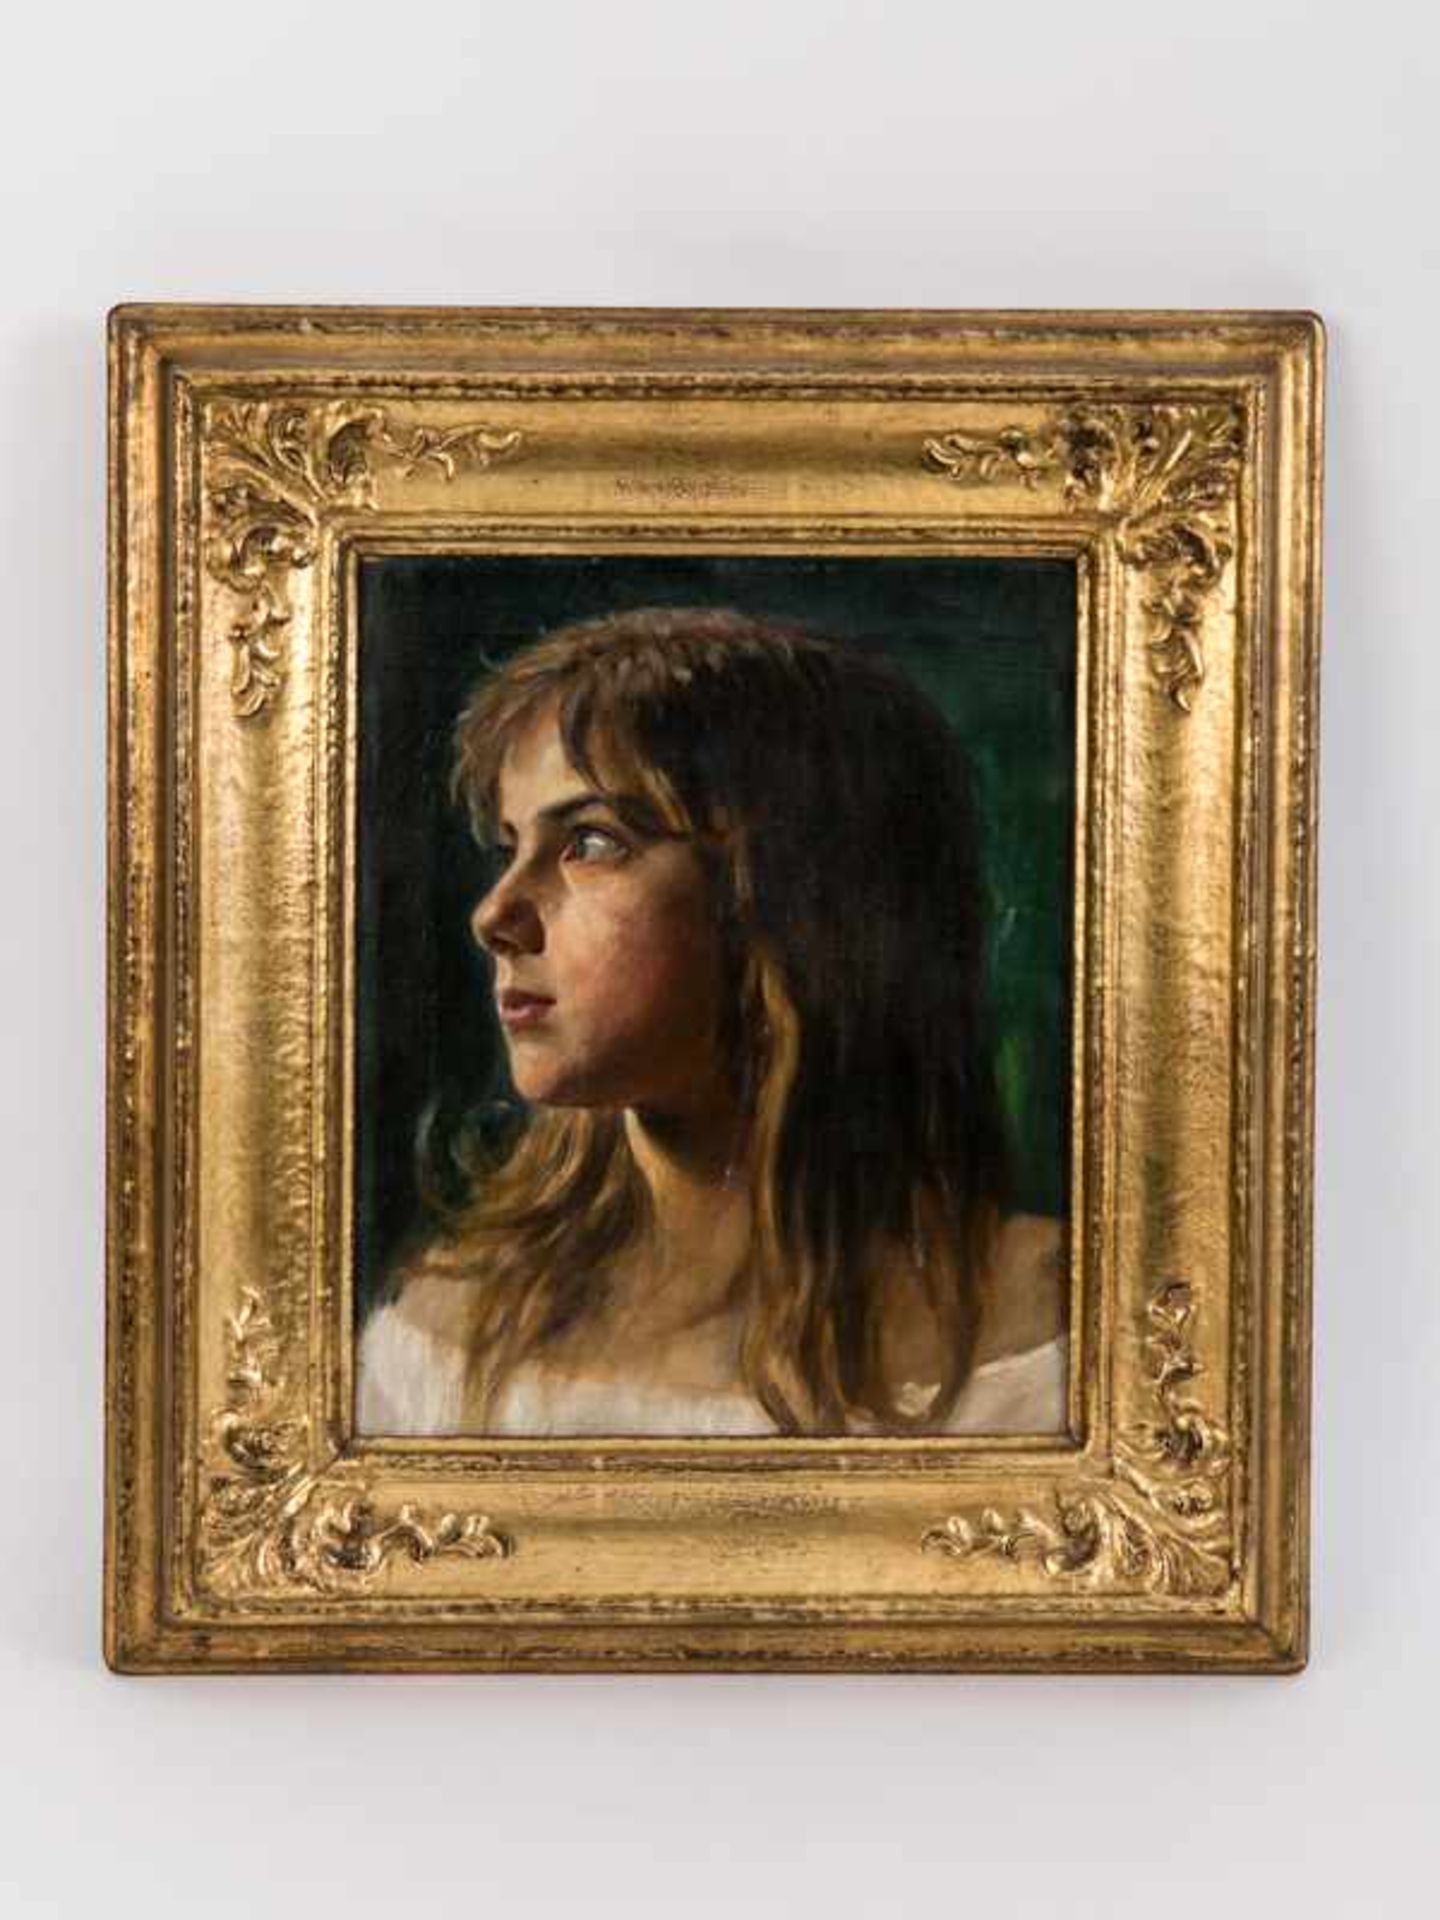 Wachsmuth, Maximilian (1859 - 1912). Öl auf Leinwand; "Portrait eines Mädchens mit längeren Haaren